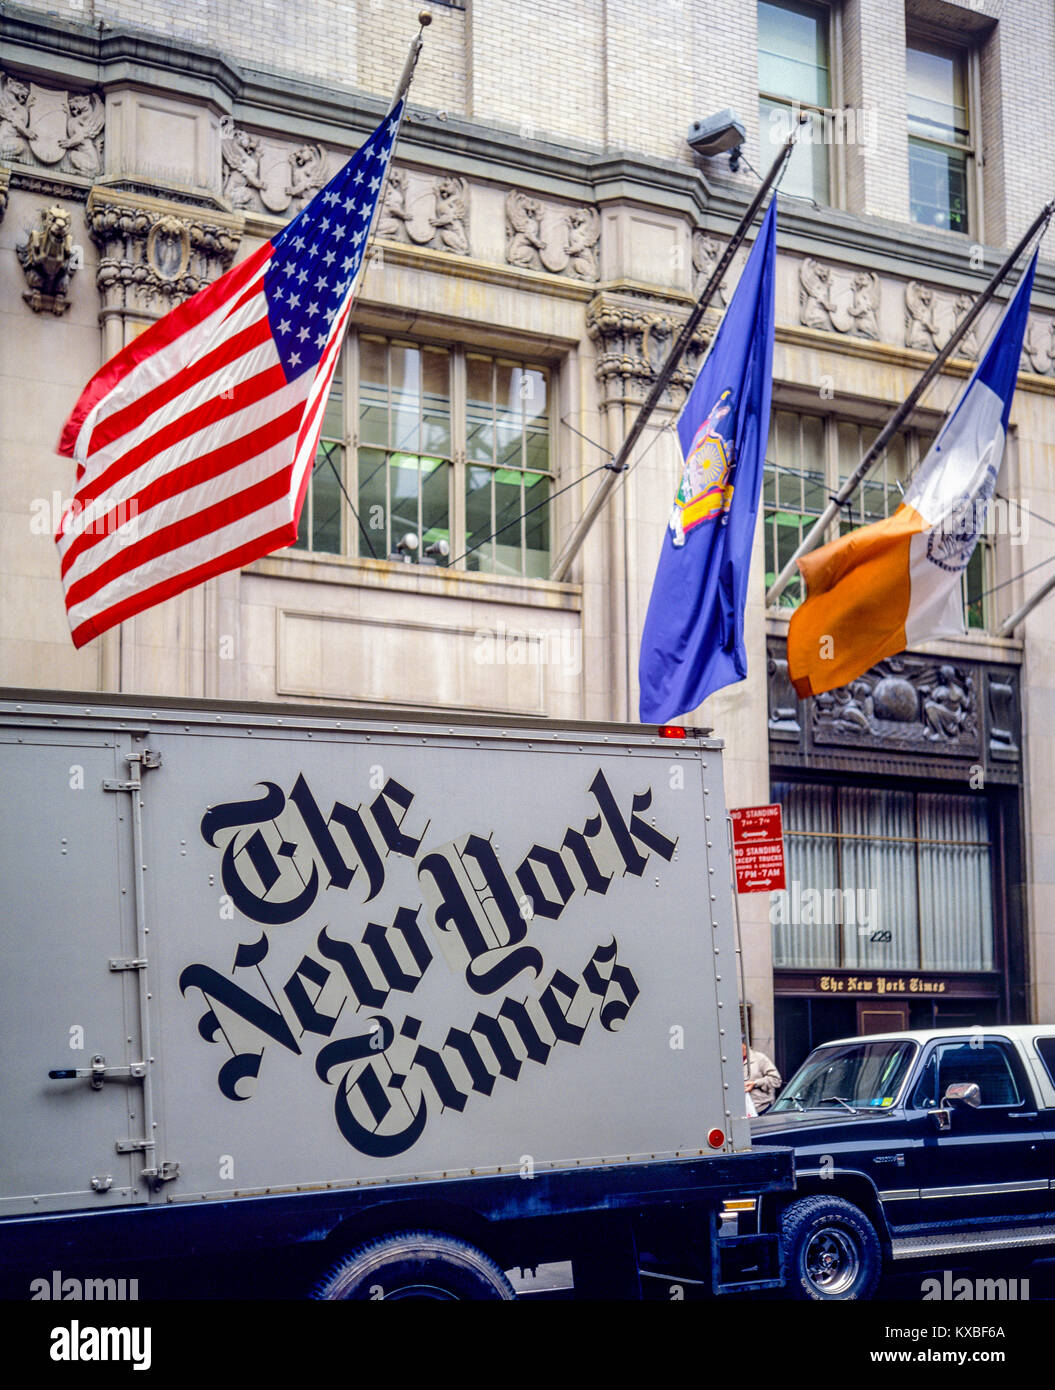 New York 1980s, camion de livraison du journal The New York Times, drapeaux, 229 West 43rd Street, Manhattan, New York City, NY, NYC, ÉTATS-UNIS, Banque D'Images